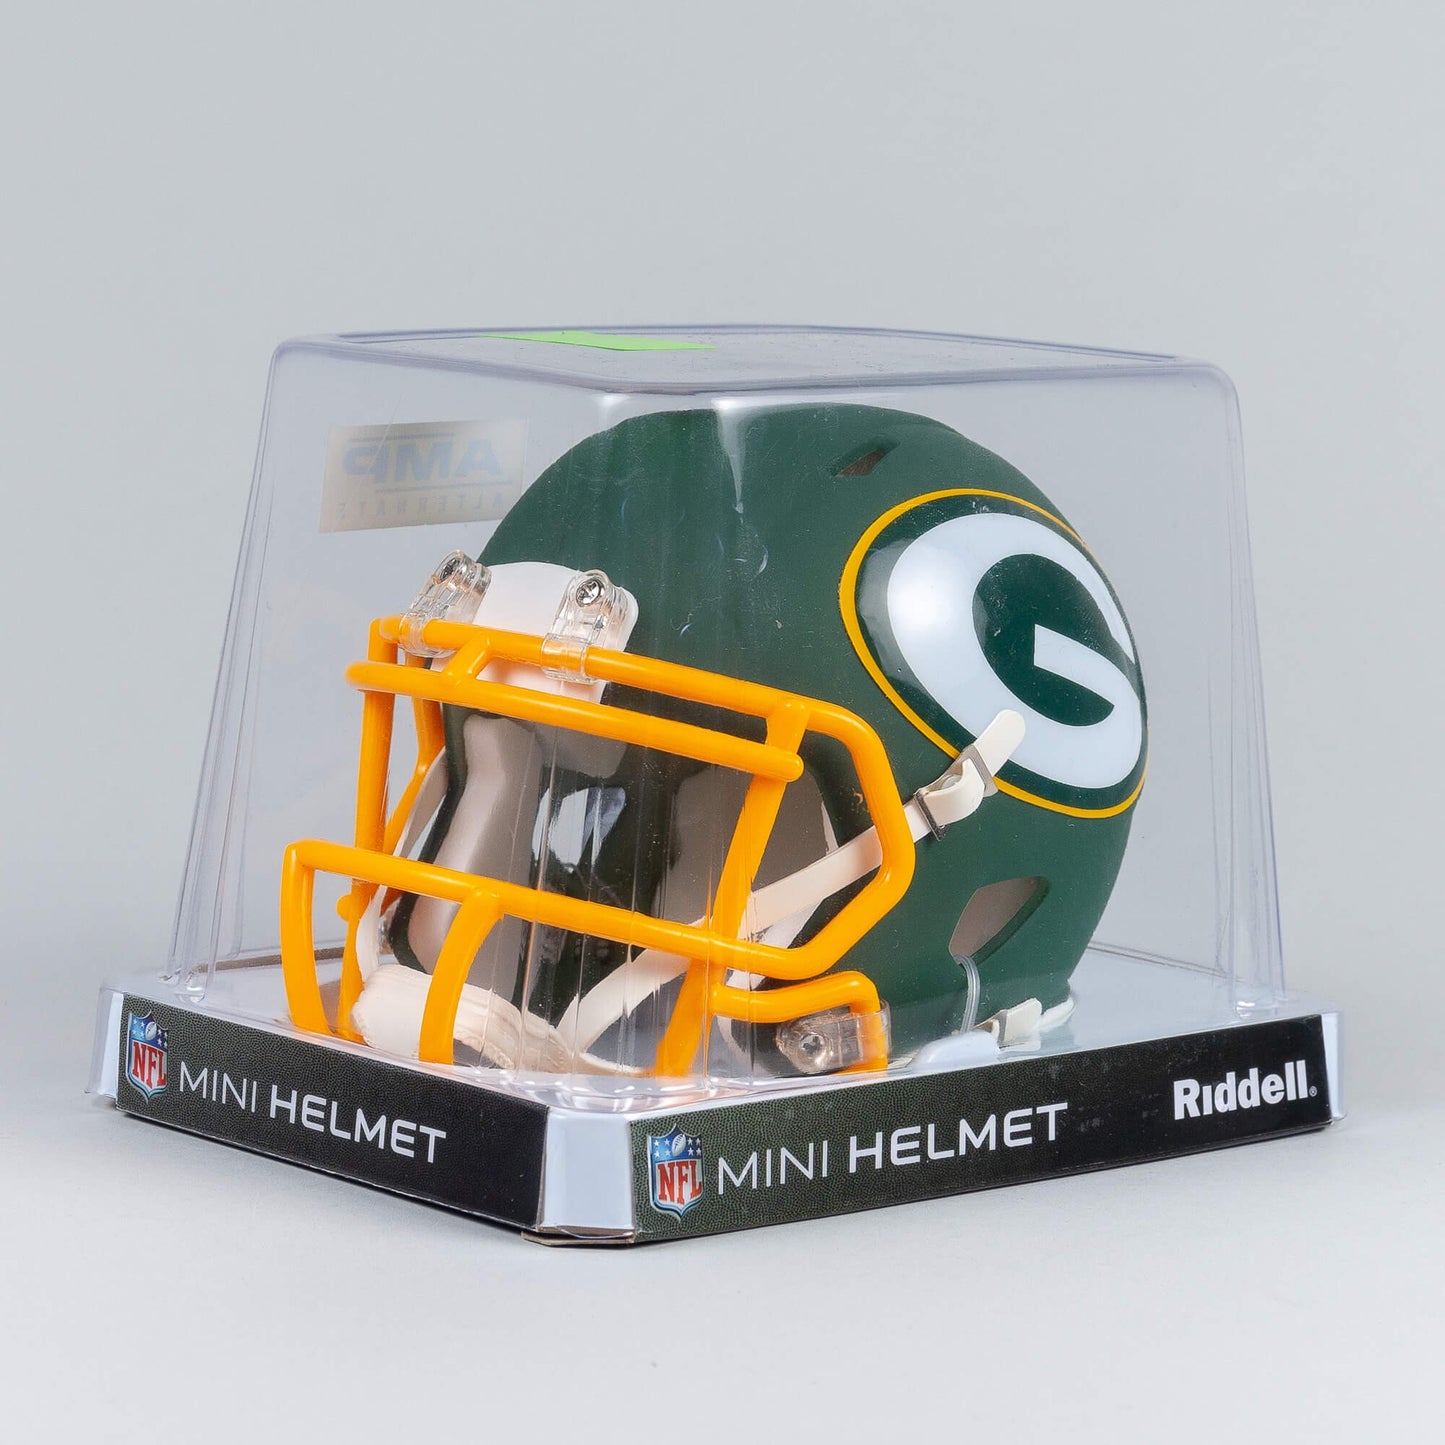 Riddell Amp Mini Helmet Green Bay Packers